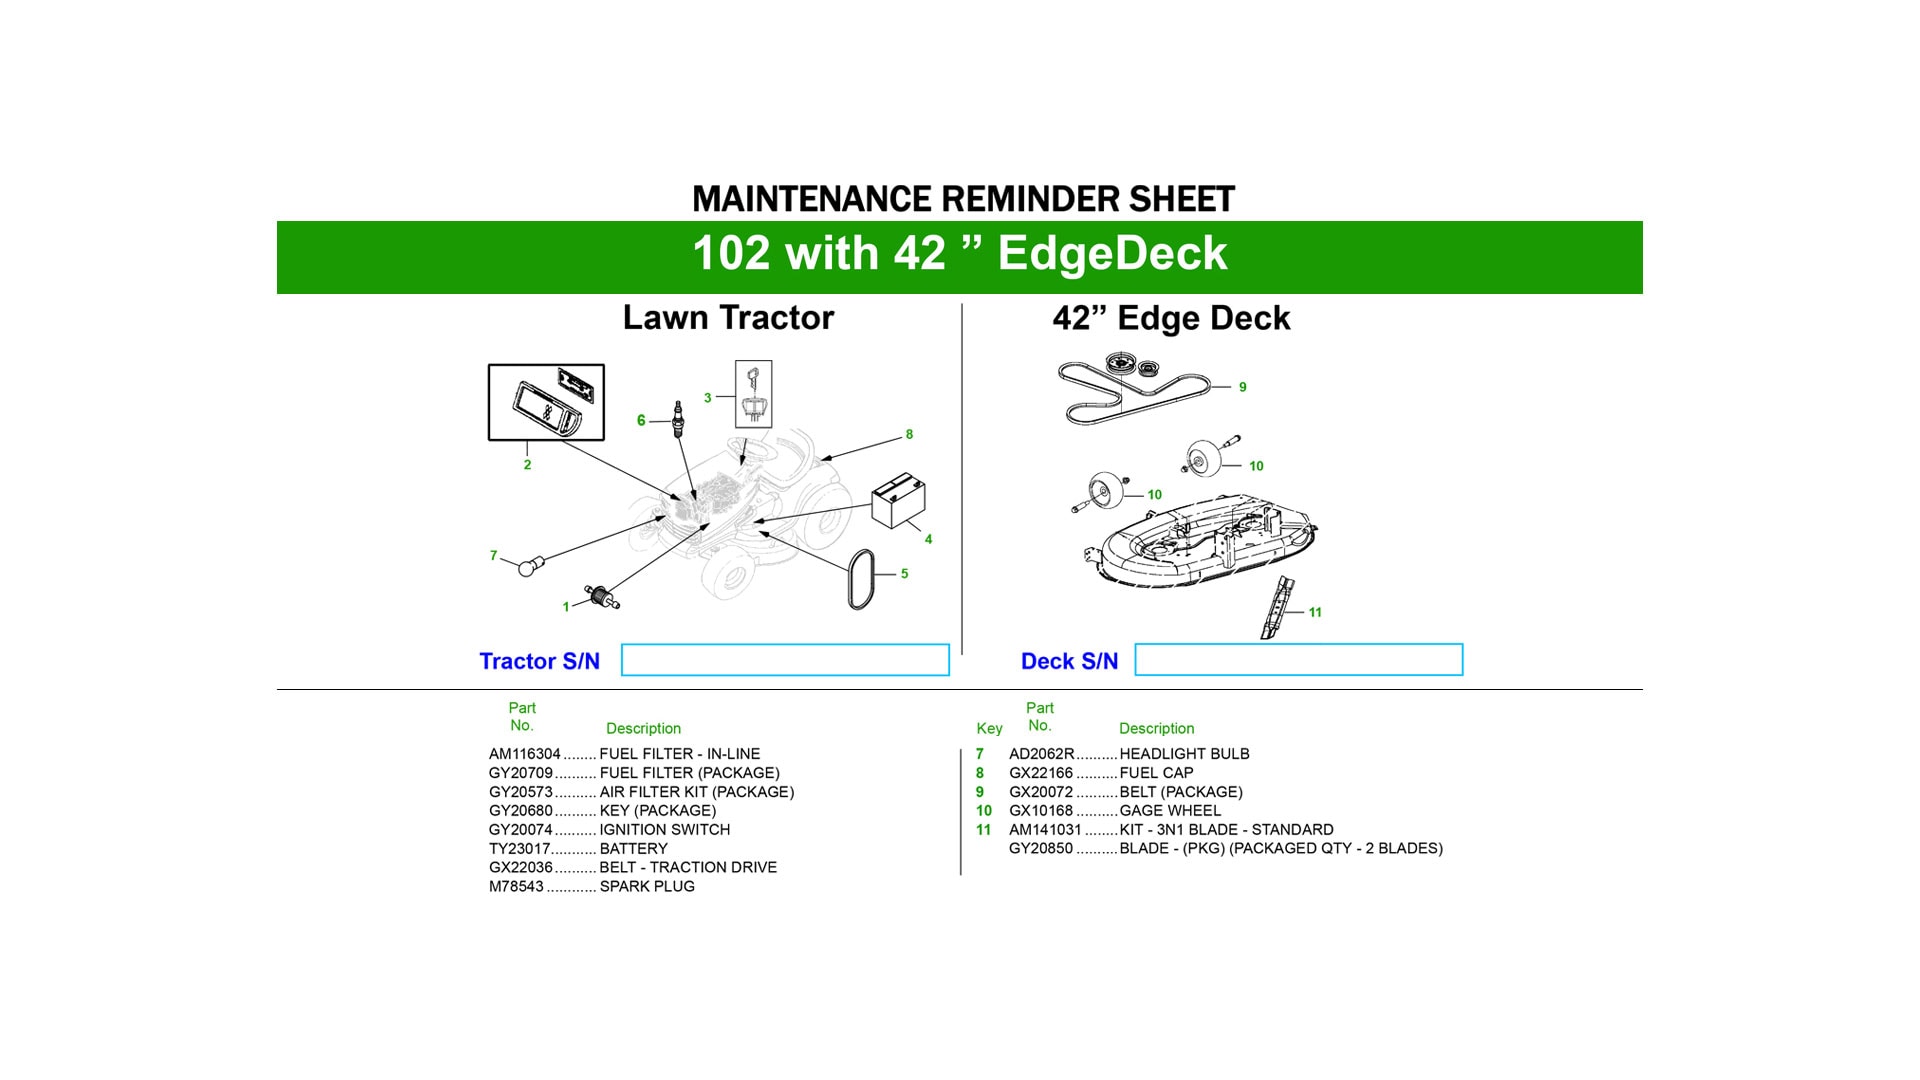 maintenance reminder sheet image